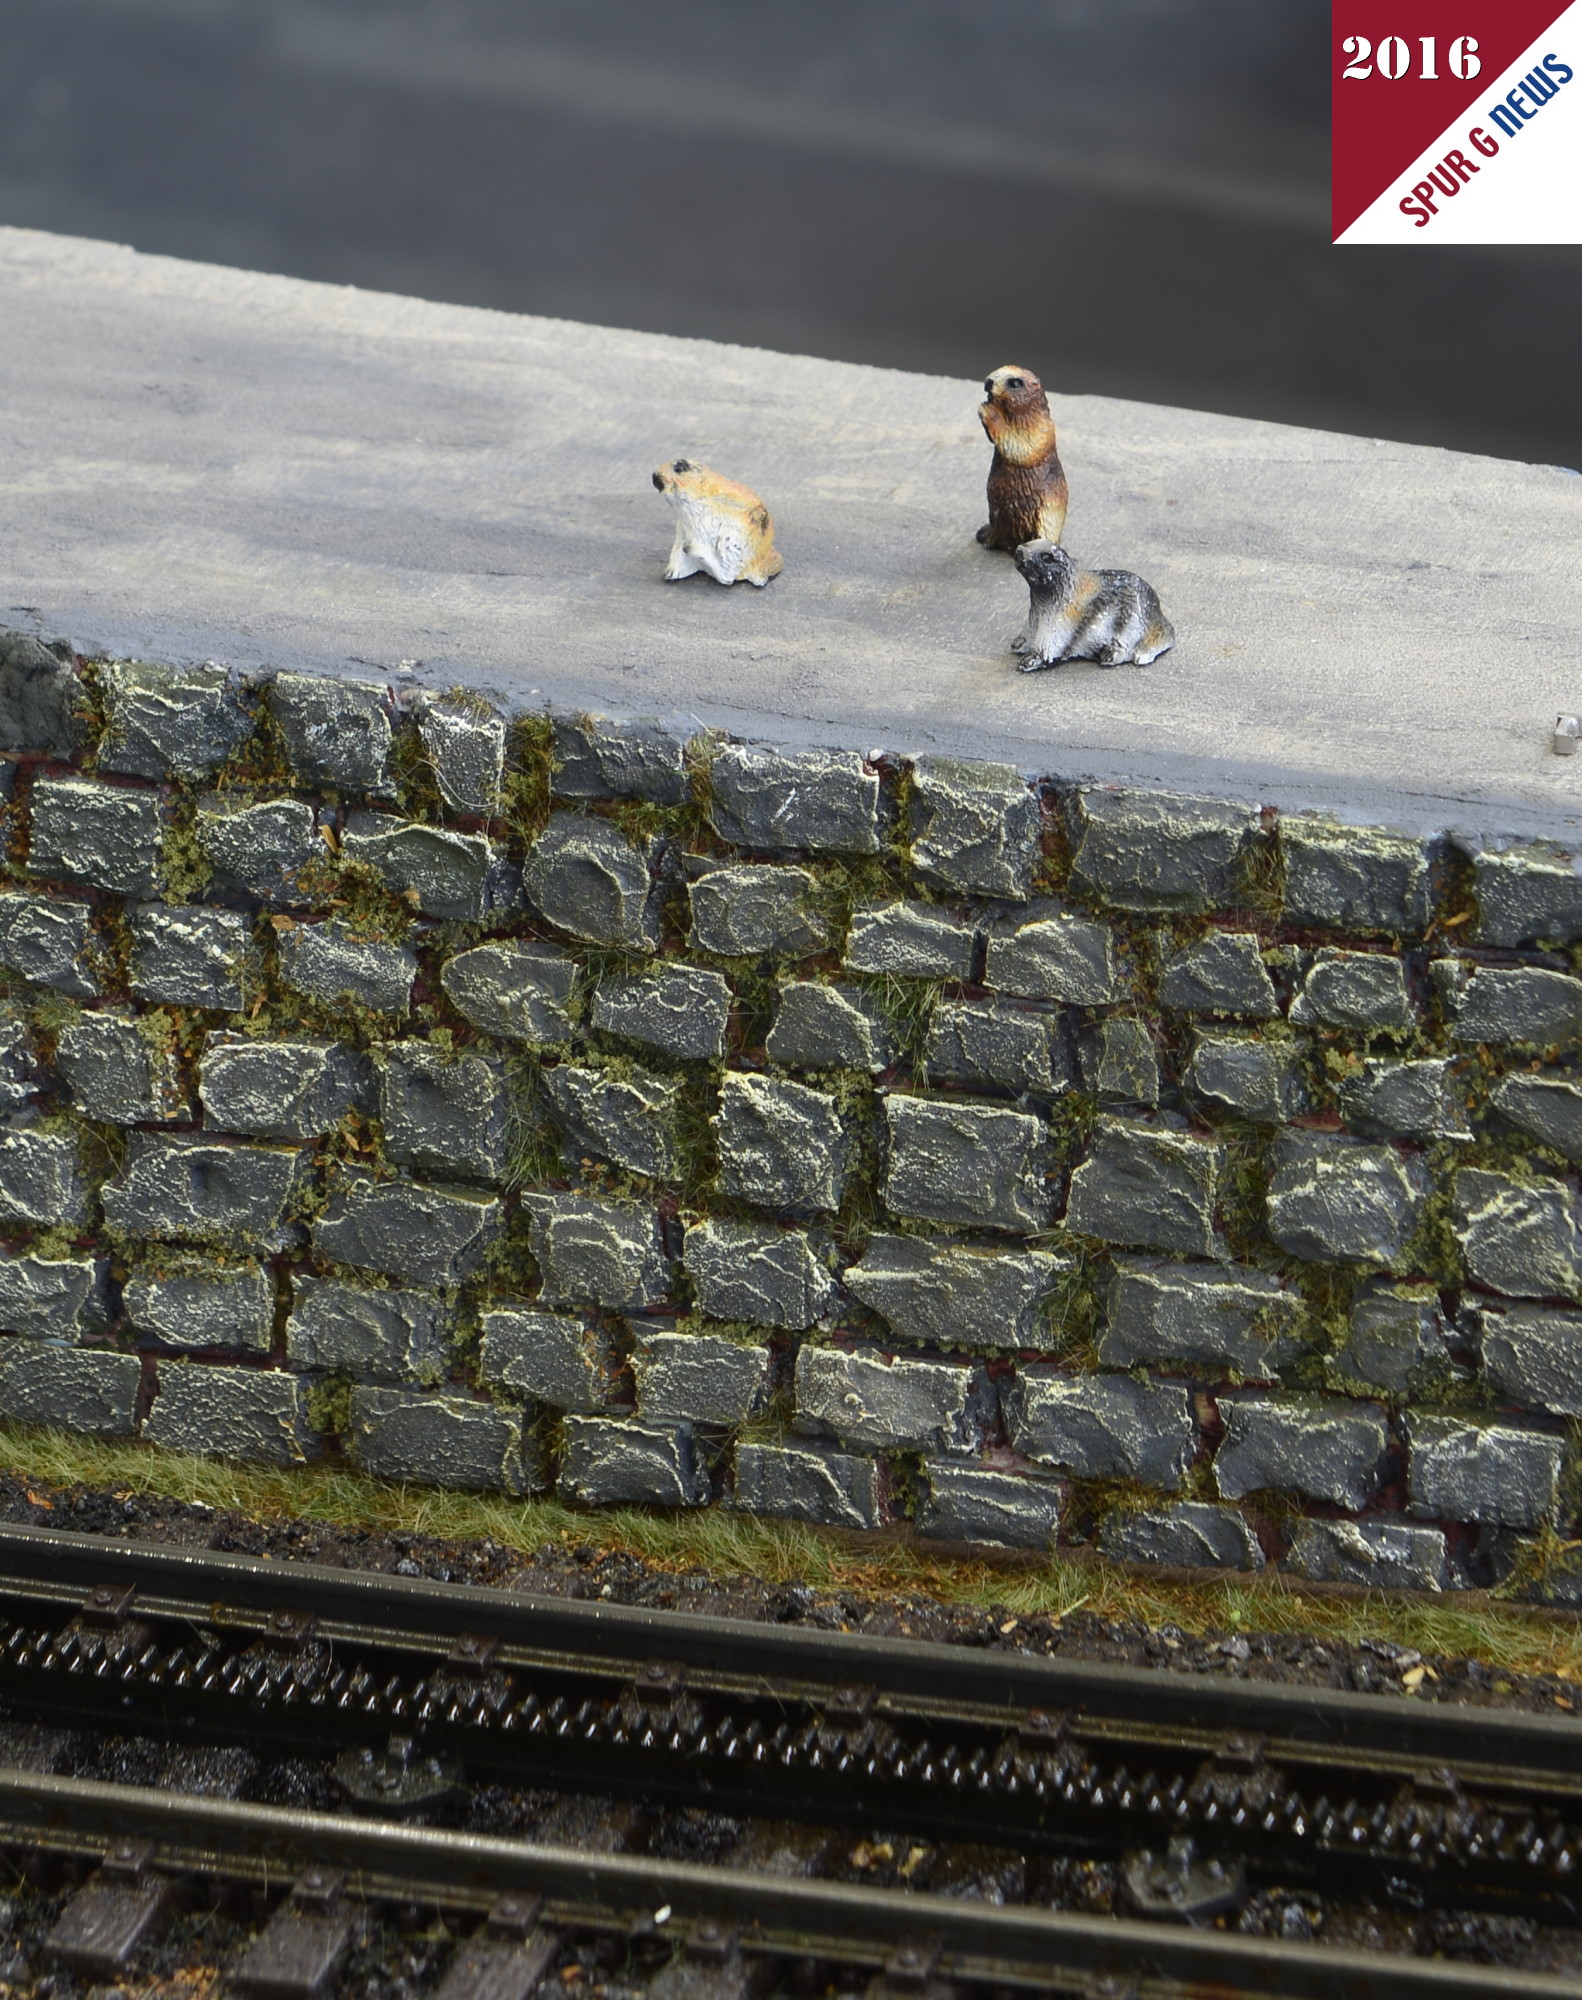 Diesmal warteten schon die kleinen Murmeltiere von Prehm-Miniaturen an der Strecke auf den roten Zug der Schafbergbahn. Auch bei der Schafbergbahn ist die Zahnstange vom System "ABT" verbaut. wird das Bild durch rechtsklick vergrößert, kann hier schön die Zweilammenzahnstange erkannt werden. 